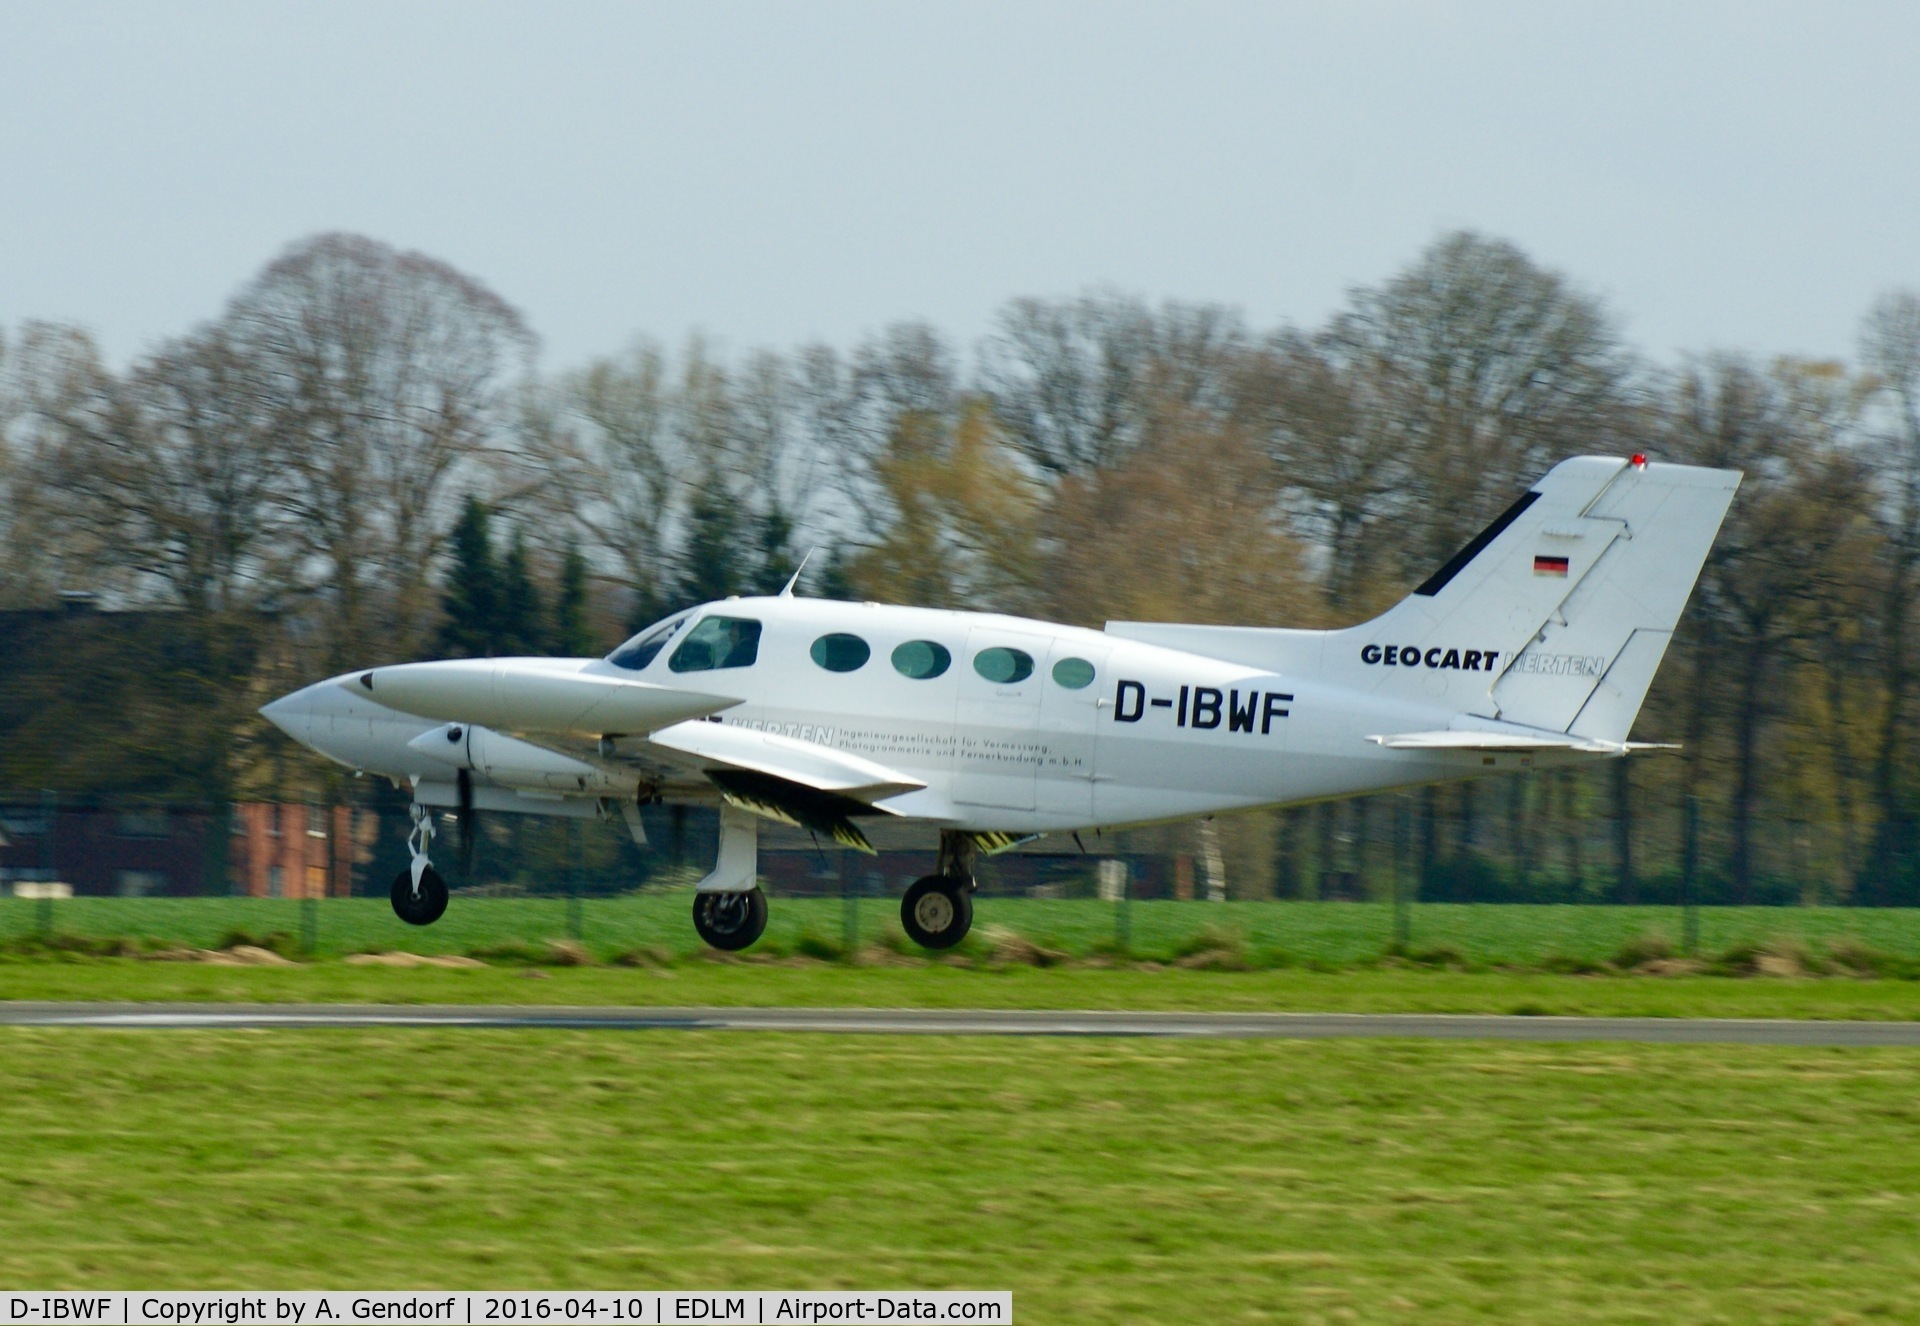 D-IBWF, Cessna 402B C/N 402B0221, Geocart Herten, is here landing at Marl-Loemühle(EDLM)